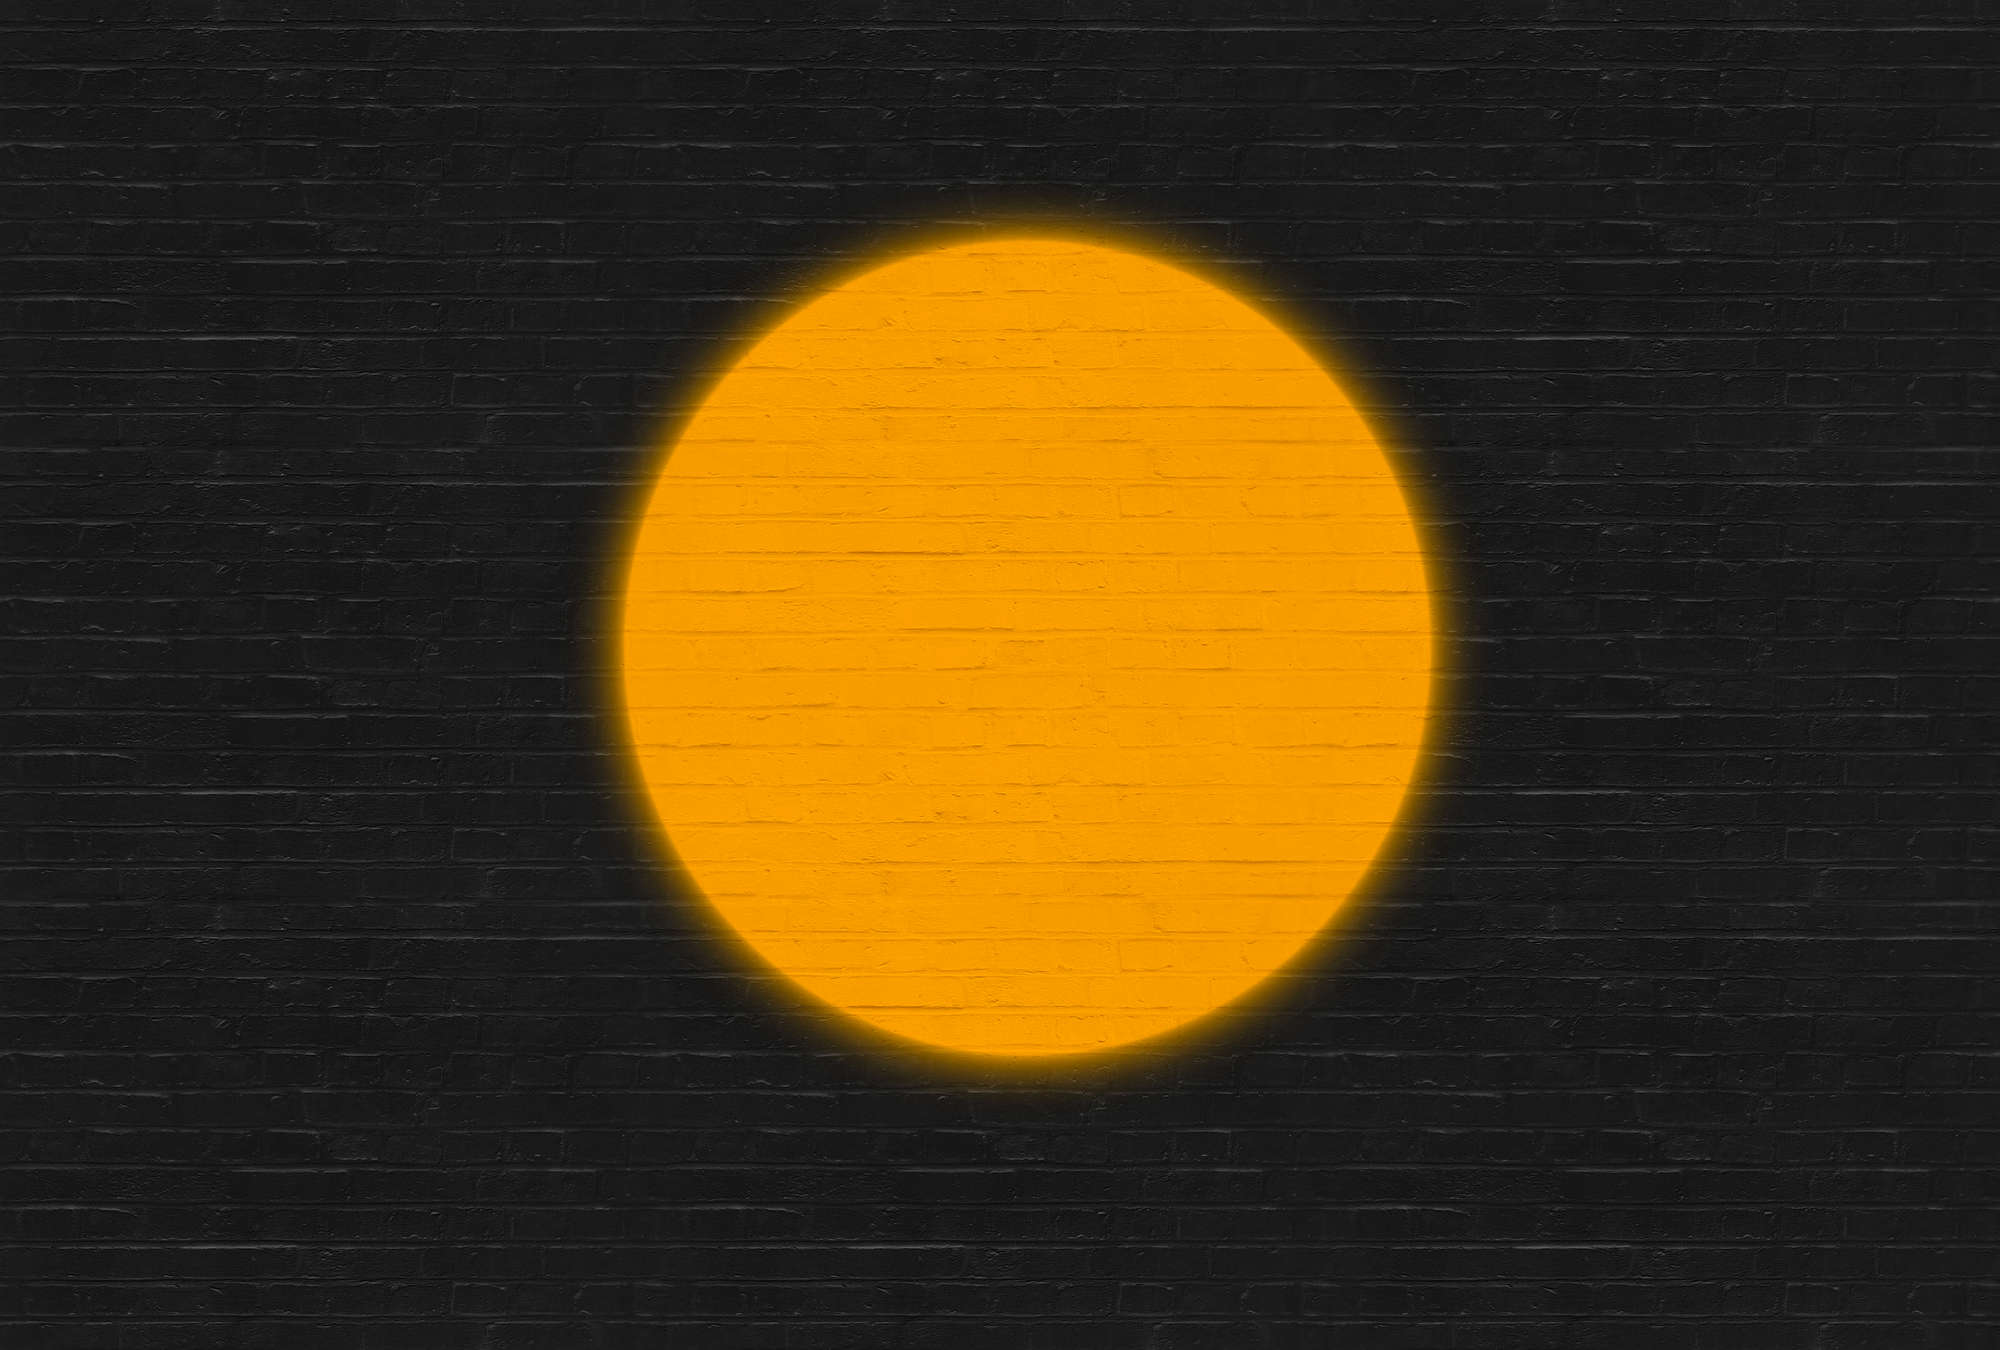             Papel pintado de diseño minimalista y aspecto de ladrillo - naranja, negro
        